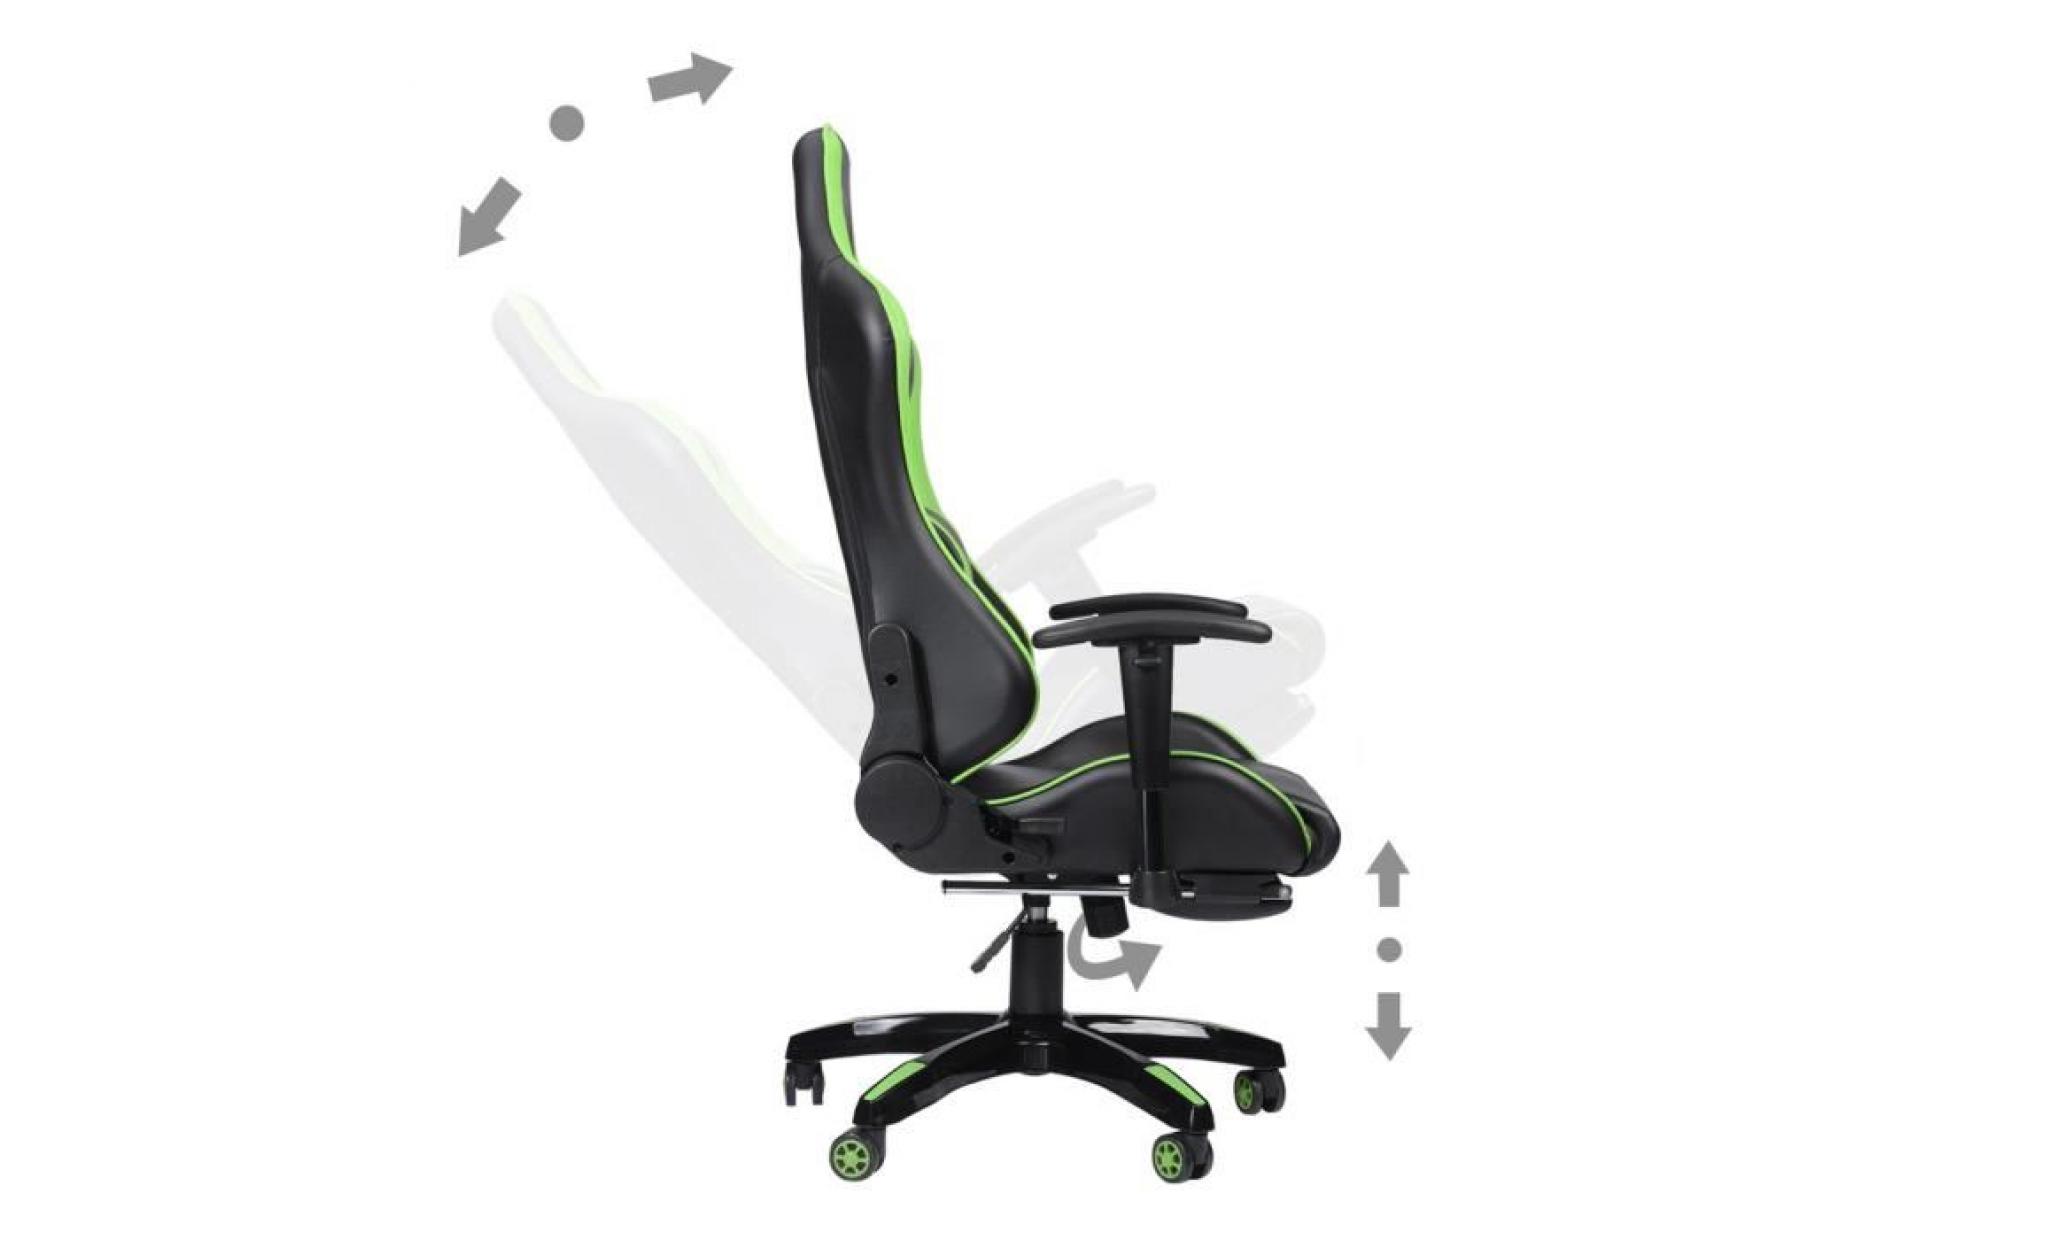 360 degrée chaise du bureau rotatif roues universels hauteur réglable vert + repose pied réglable pour jeu concours travail